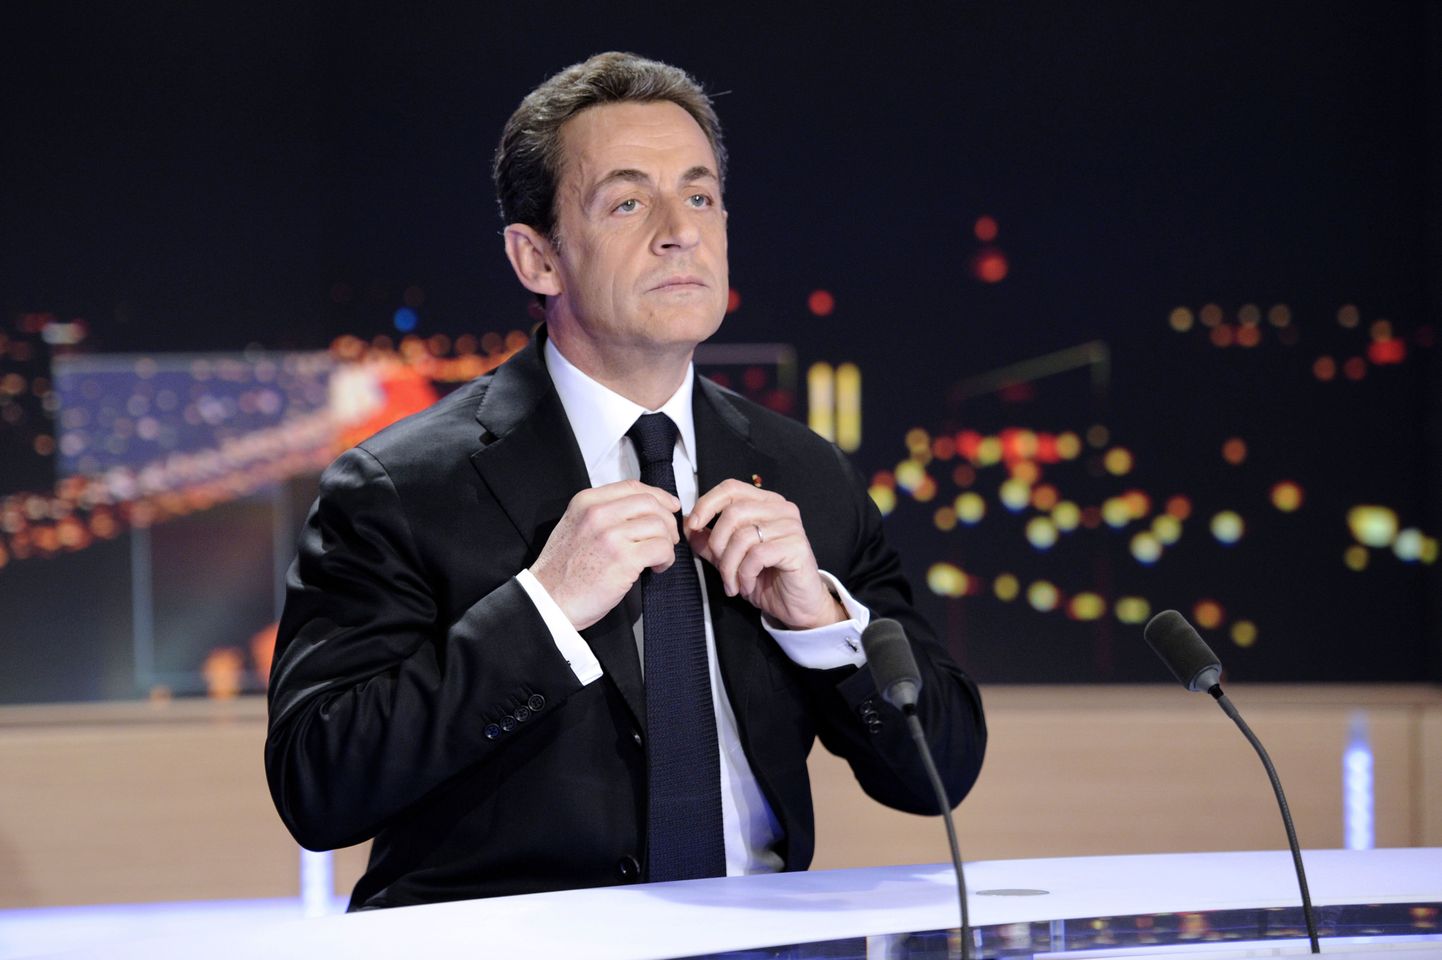 Prantsuse president Nicolas Sarkozy TF1 uudistesaates, kus teatas kandideerimisest.